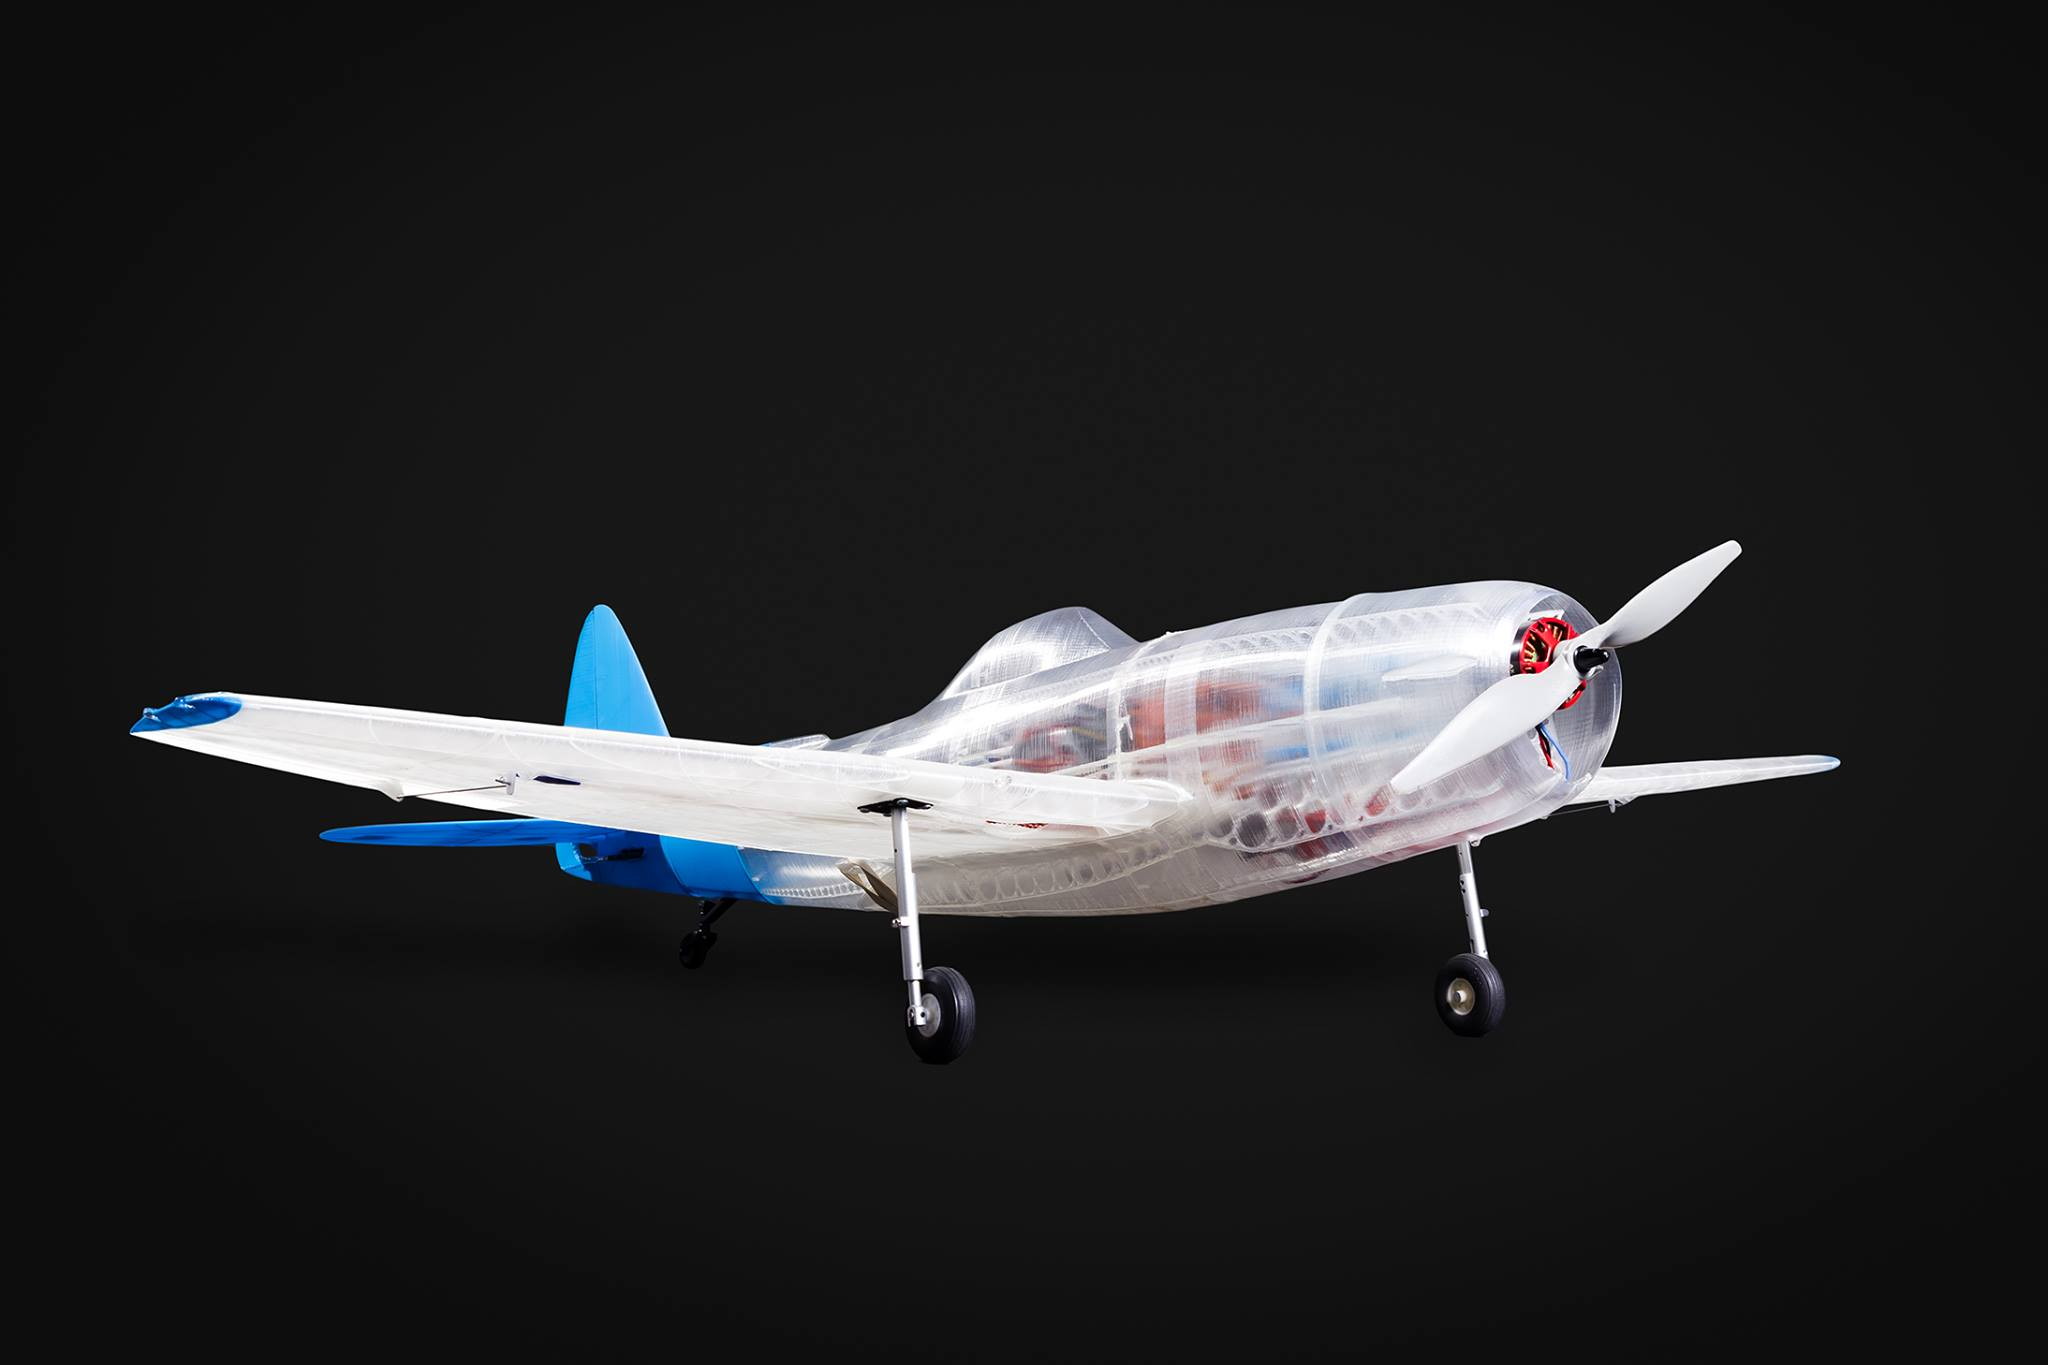 РУ самолет, распечатанный на 3D принтере